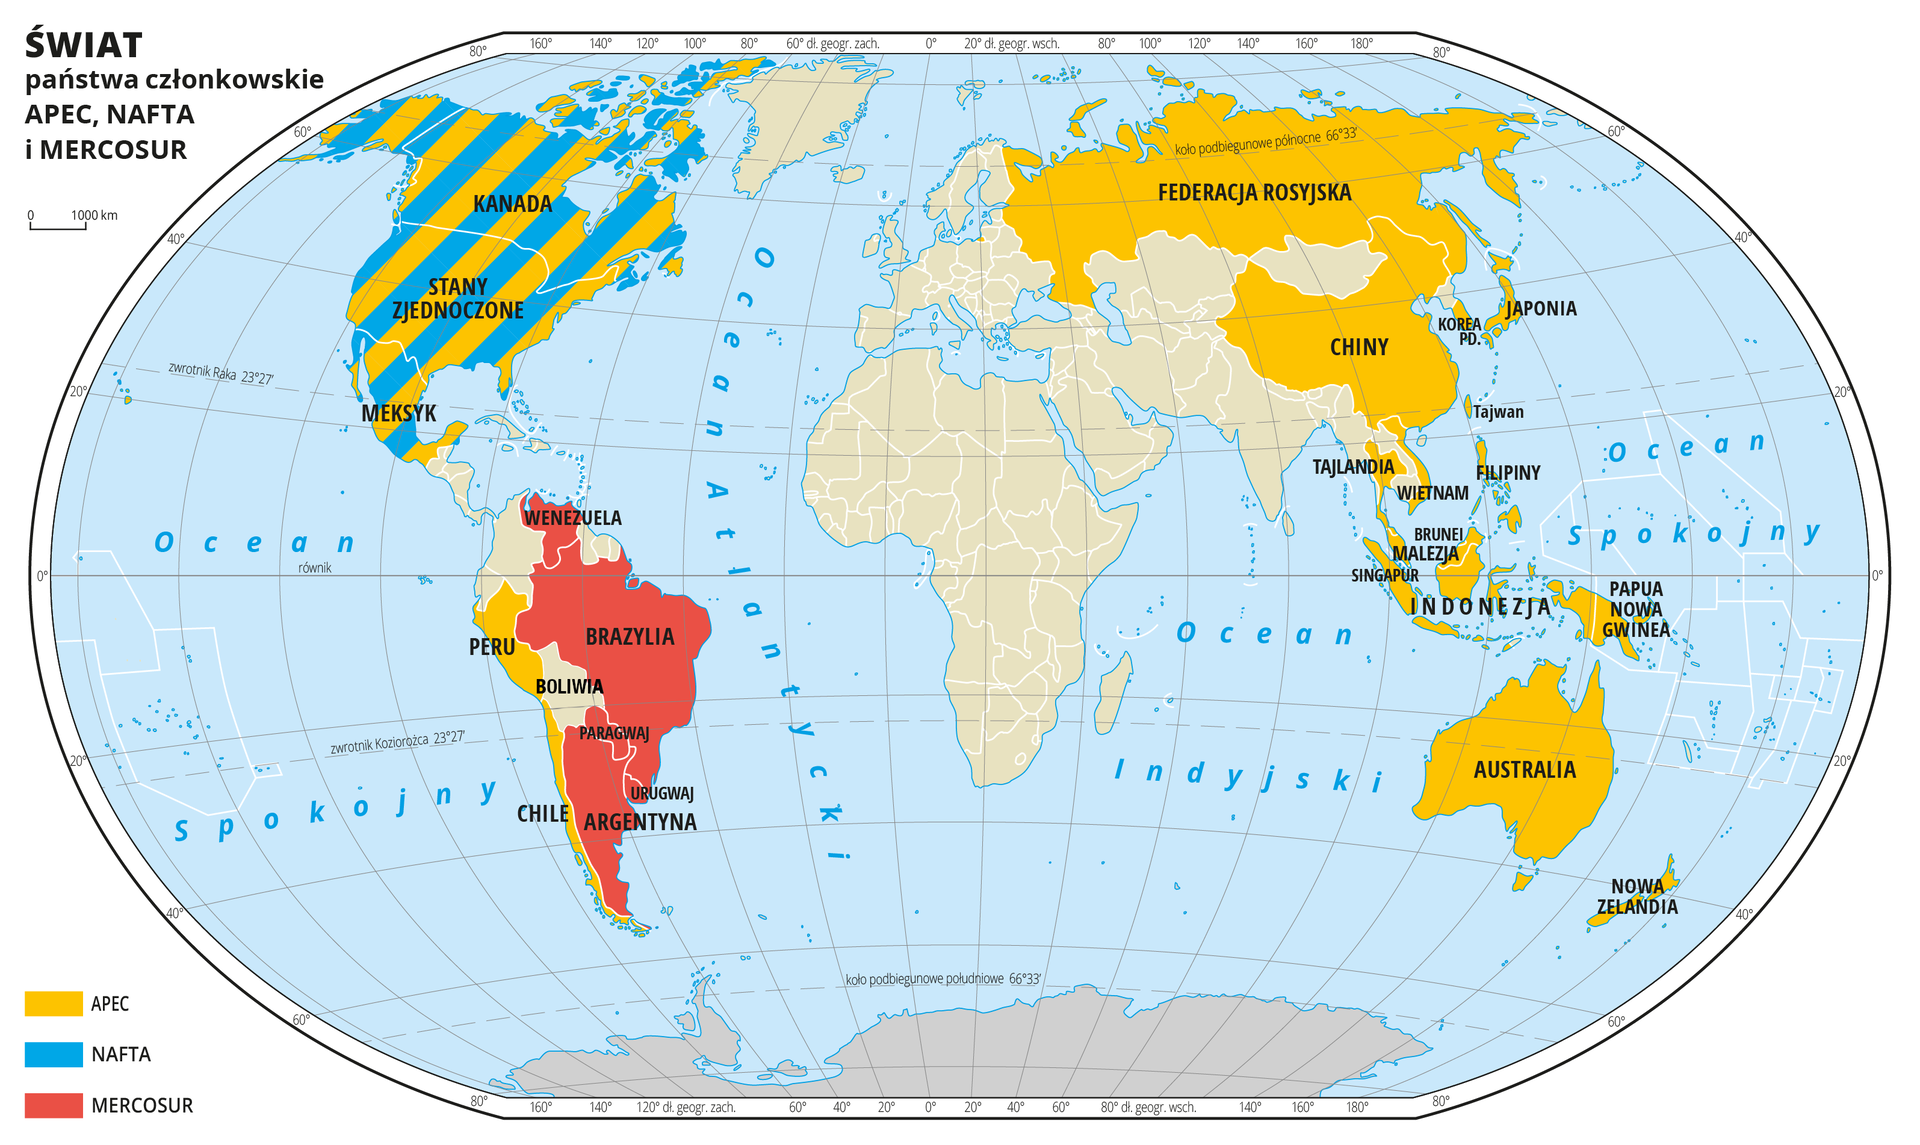 Ilustracja przedstawia mapę świata. Wody zaznaczono kolorem niebieskim. Opisano oceany.Na mapie za pomocą kolorów (żółty, niebieski, czerwony) oznaczono odpowiednio państwa członkowskie APEC, NAFTA i MERCOSUR. W Ameryce Północnej przeplata się kolor żółty i niebieski – APEC i NAFTA, na prawie całym obszarze Ameryki Południowej jest kolor czerwony – MERCOSUR, Federacja Rosyjska i Chiny oraz Wschodnia część Azji, Archipelag Malajski i Australia pokryte są kolorem żółtym – APEC. Wszystkie państwa będące członkami wymienionych organizacji opisano.Mapa pokryta jest równoleżnikami i południkami. Dookoła mapy w białej ramce opisano współrzędne geograficzne co dwadzieścia stopni.Po lewej stronie mapy objaśniono kolory użyte na mapie.